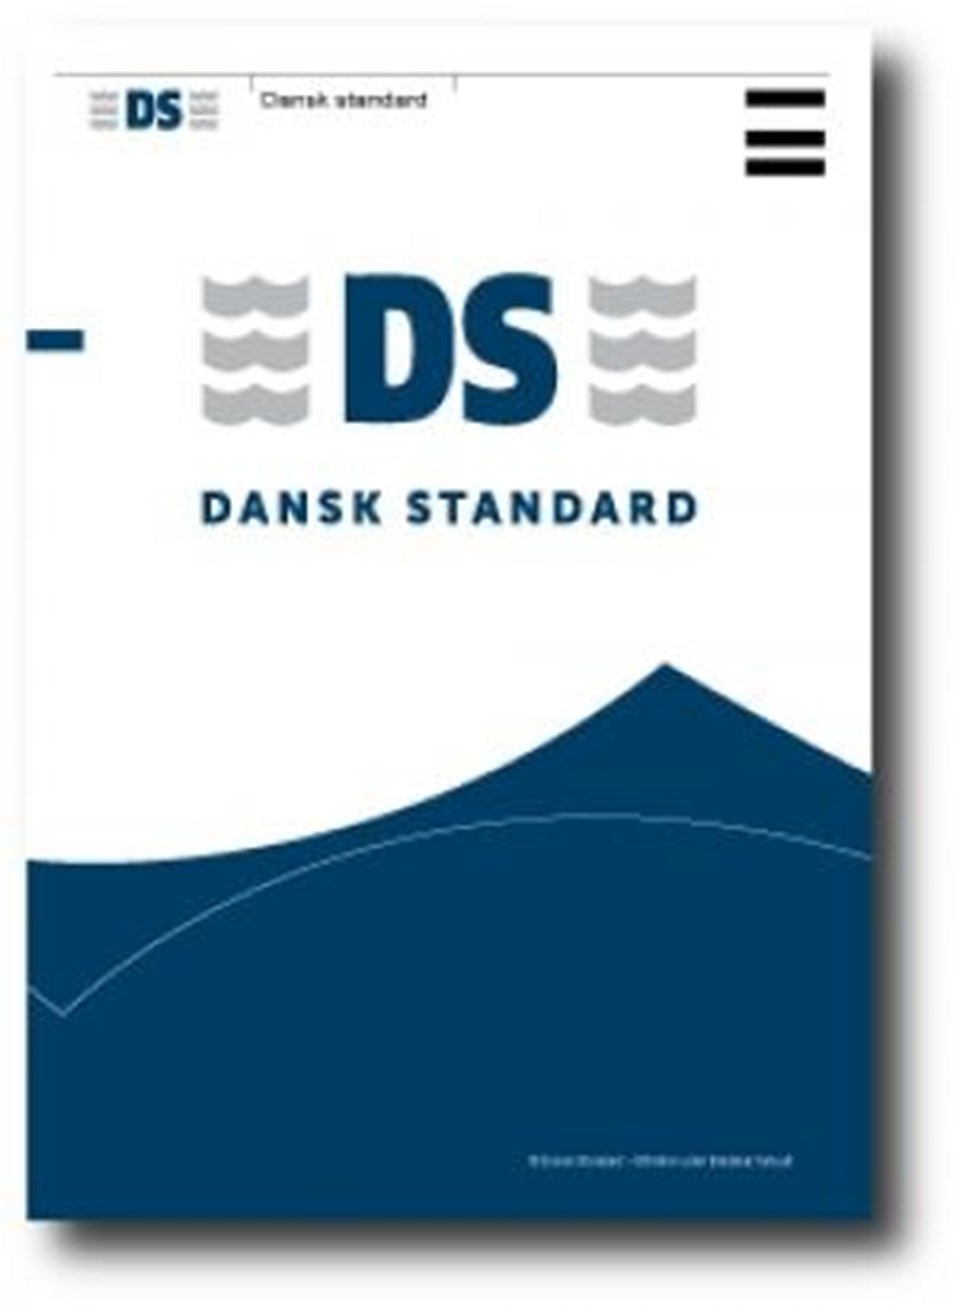 DS/EN 61439-1:2014 Lavspændingstavler - Del 1